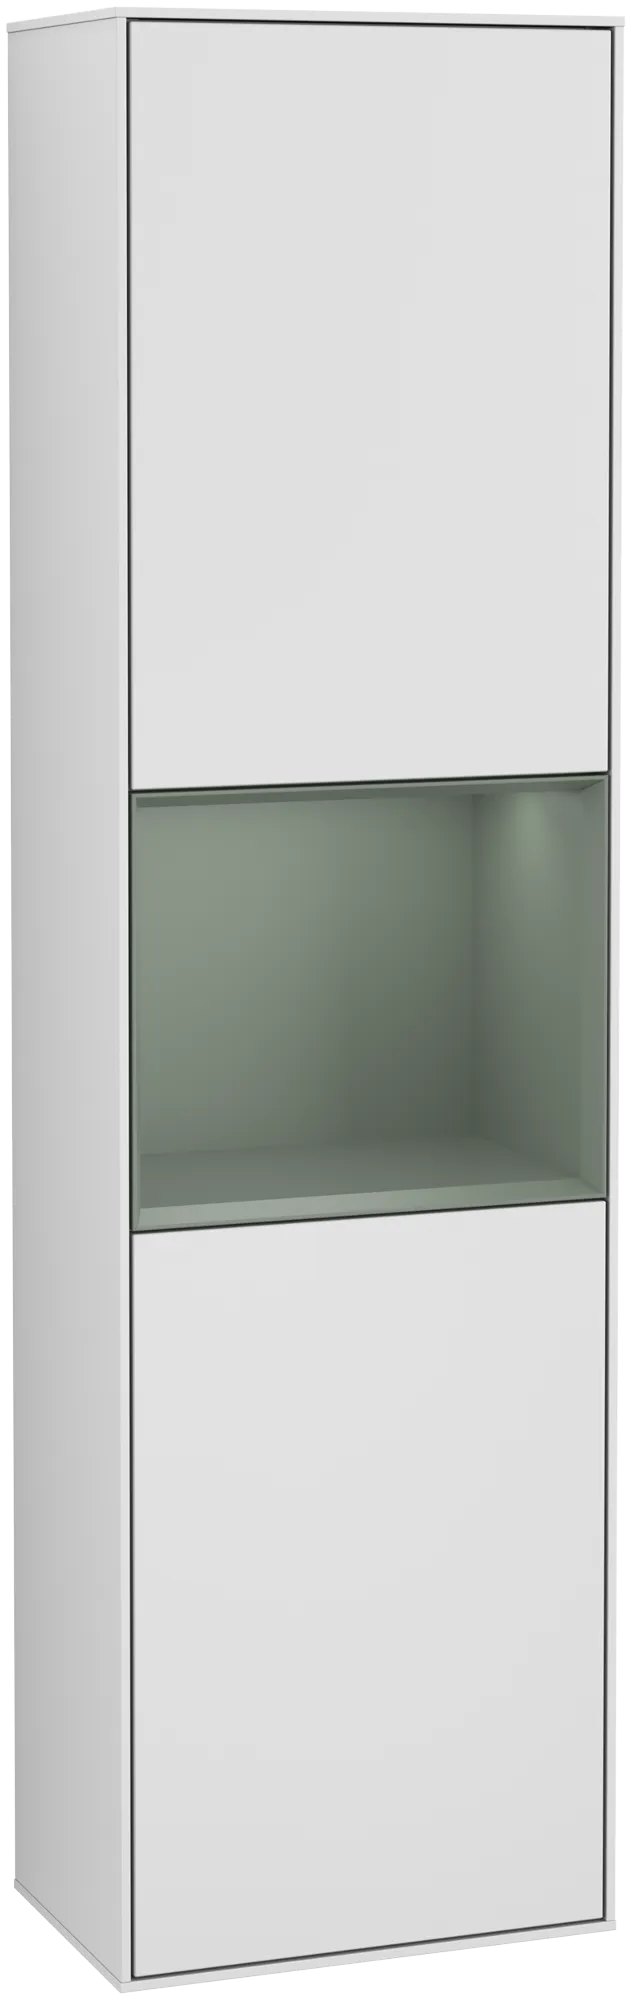 Bild von VILLEROY BOCH Finion Hochschrank, mit Beleuchtung, 2 Türen, 418 x 1516 x 270 mm, White Matt Lacquer / Olive Matt Lacquer #G470GMMT